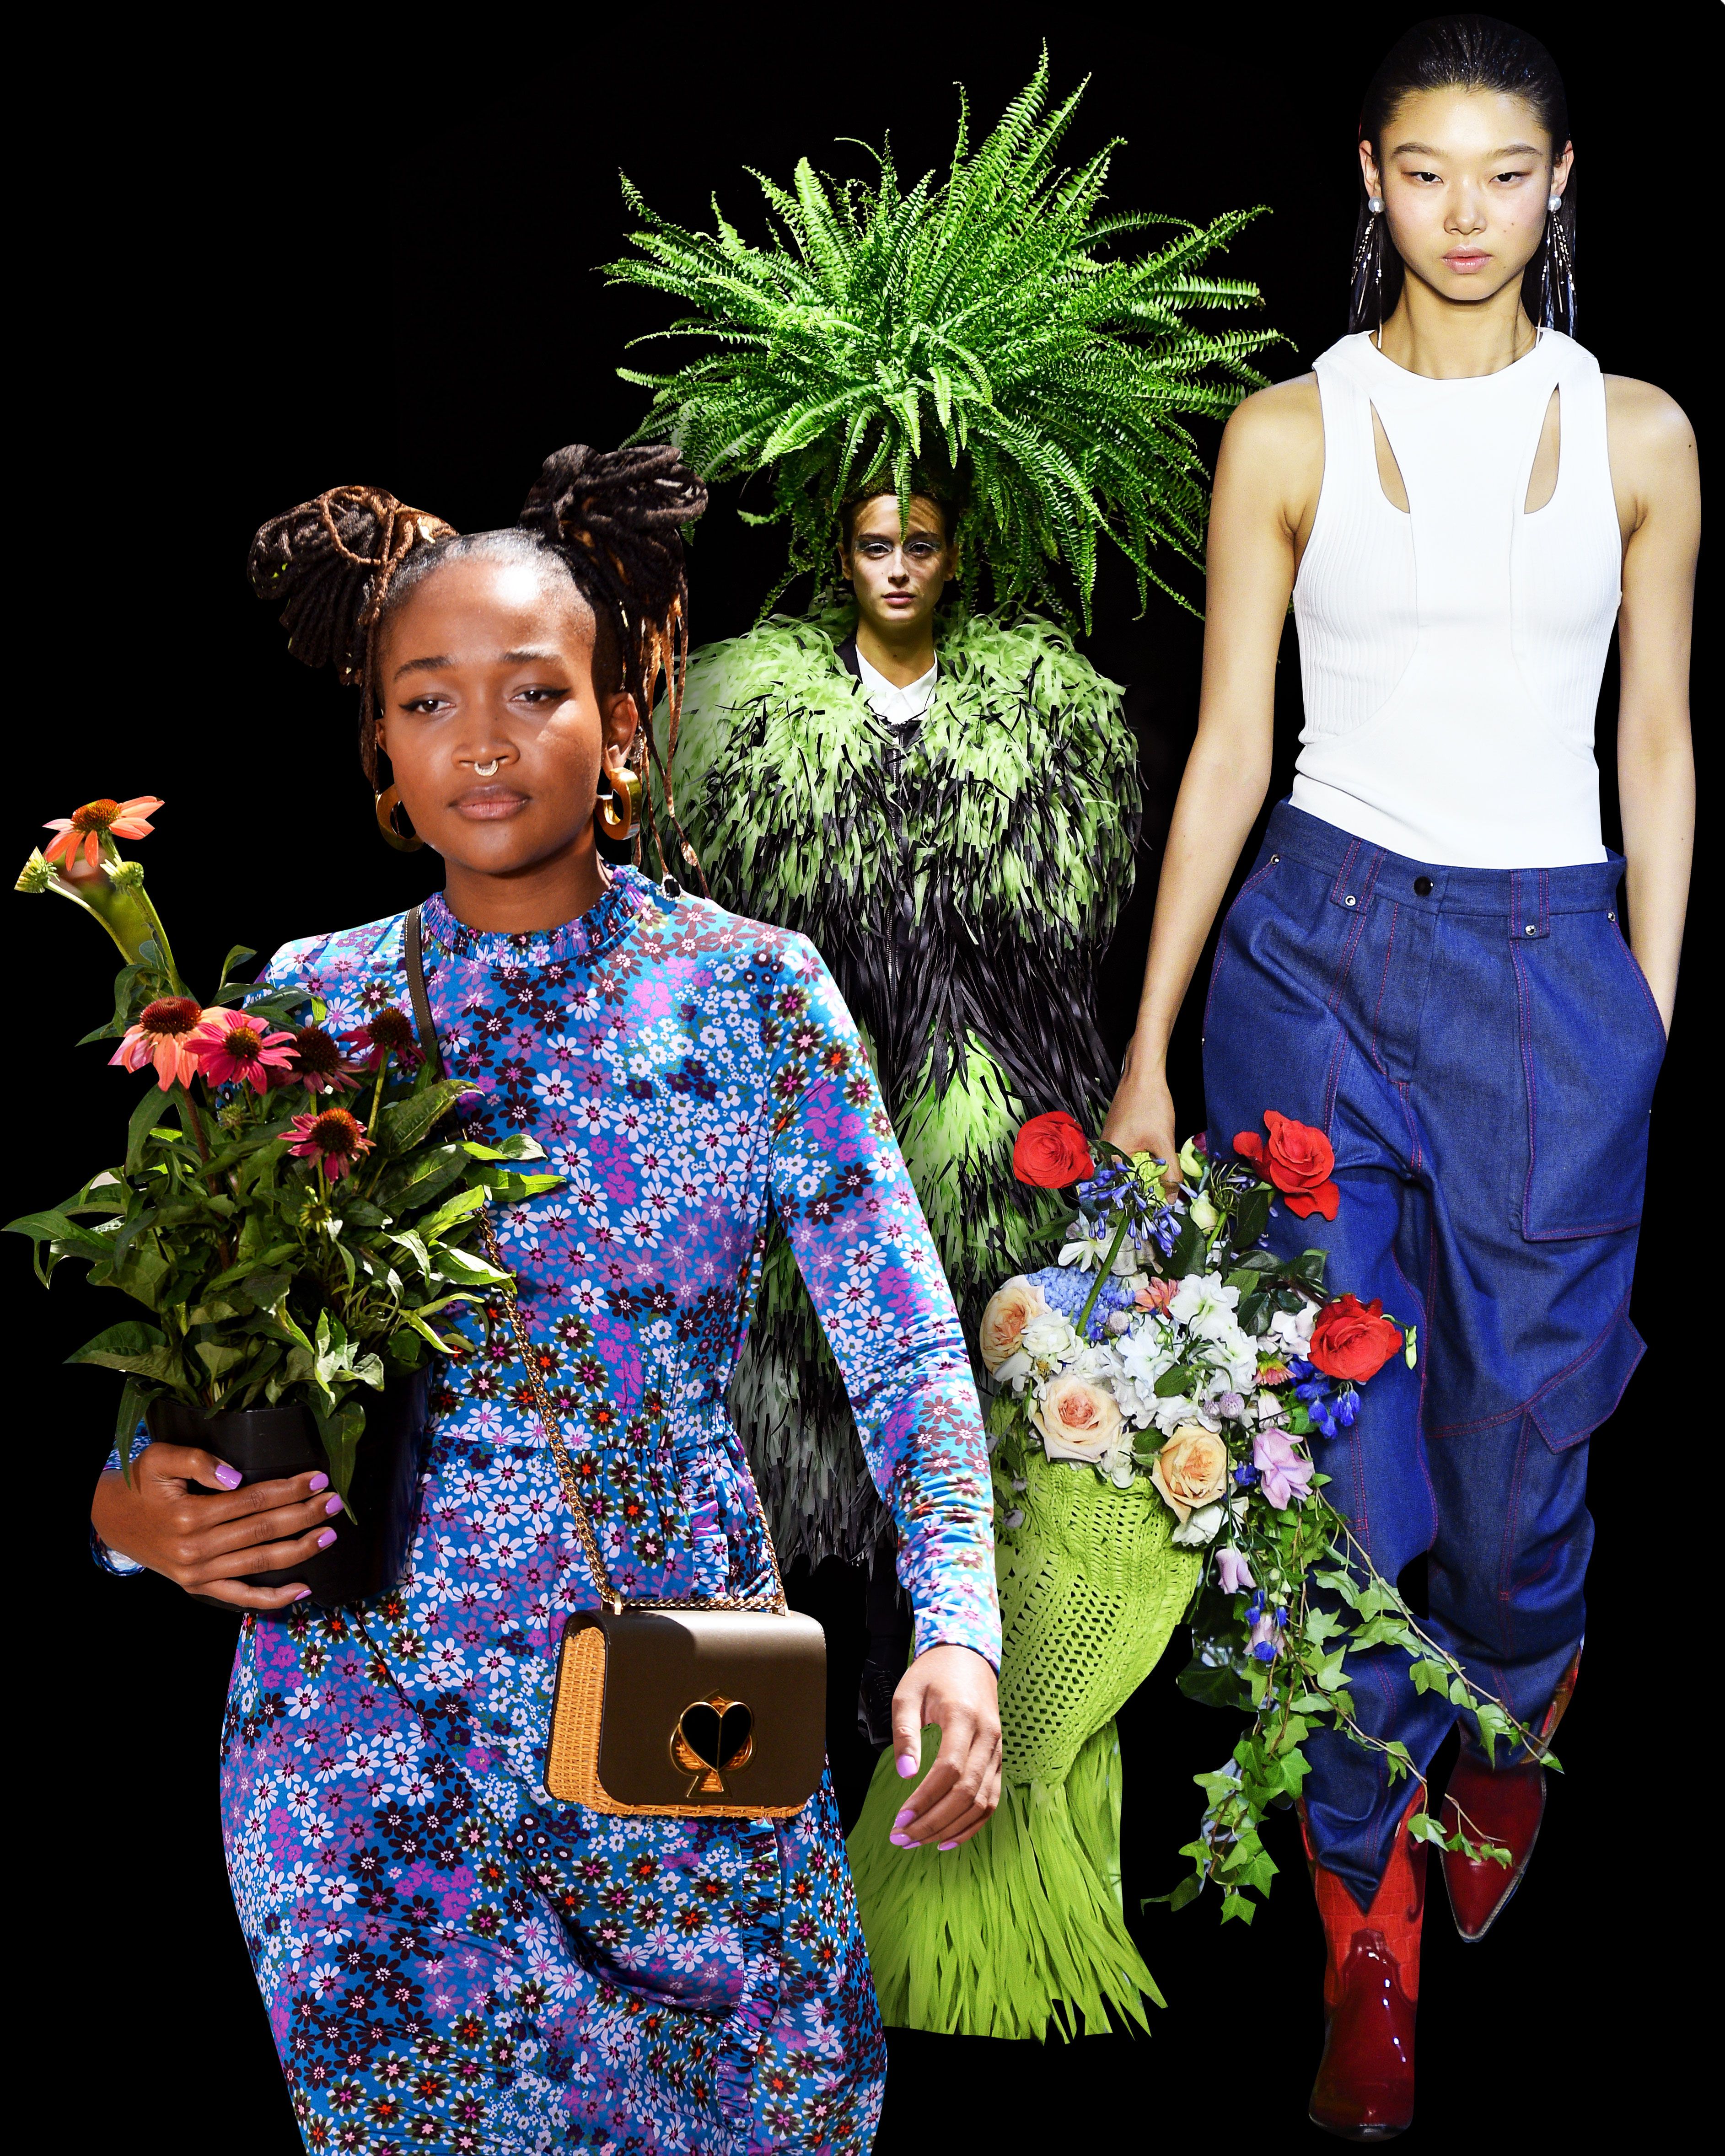 12 Top Spring 2020 Fashion Trends - Spring Fashion Trends for Women